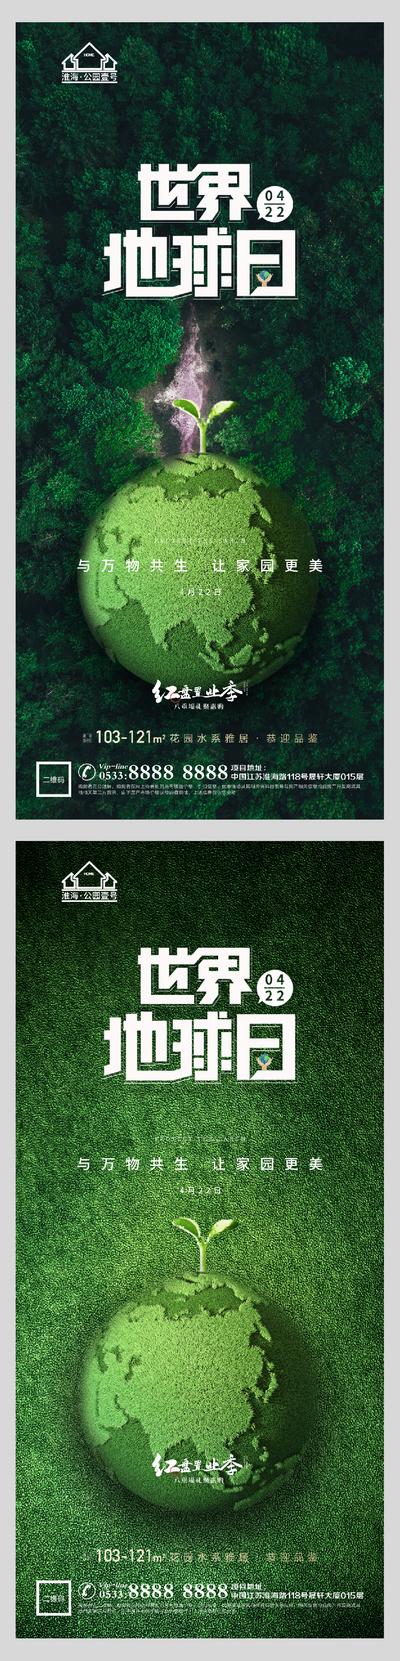 南门网 海报 公历节日 世界地球日 保护 环保 绿色